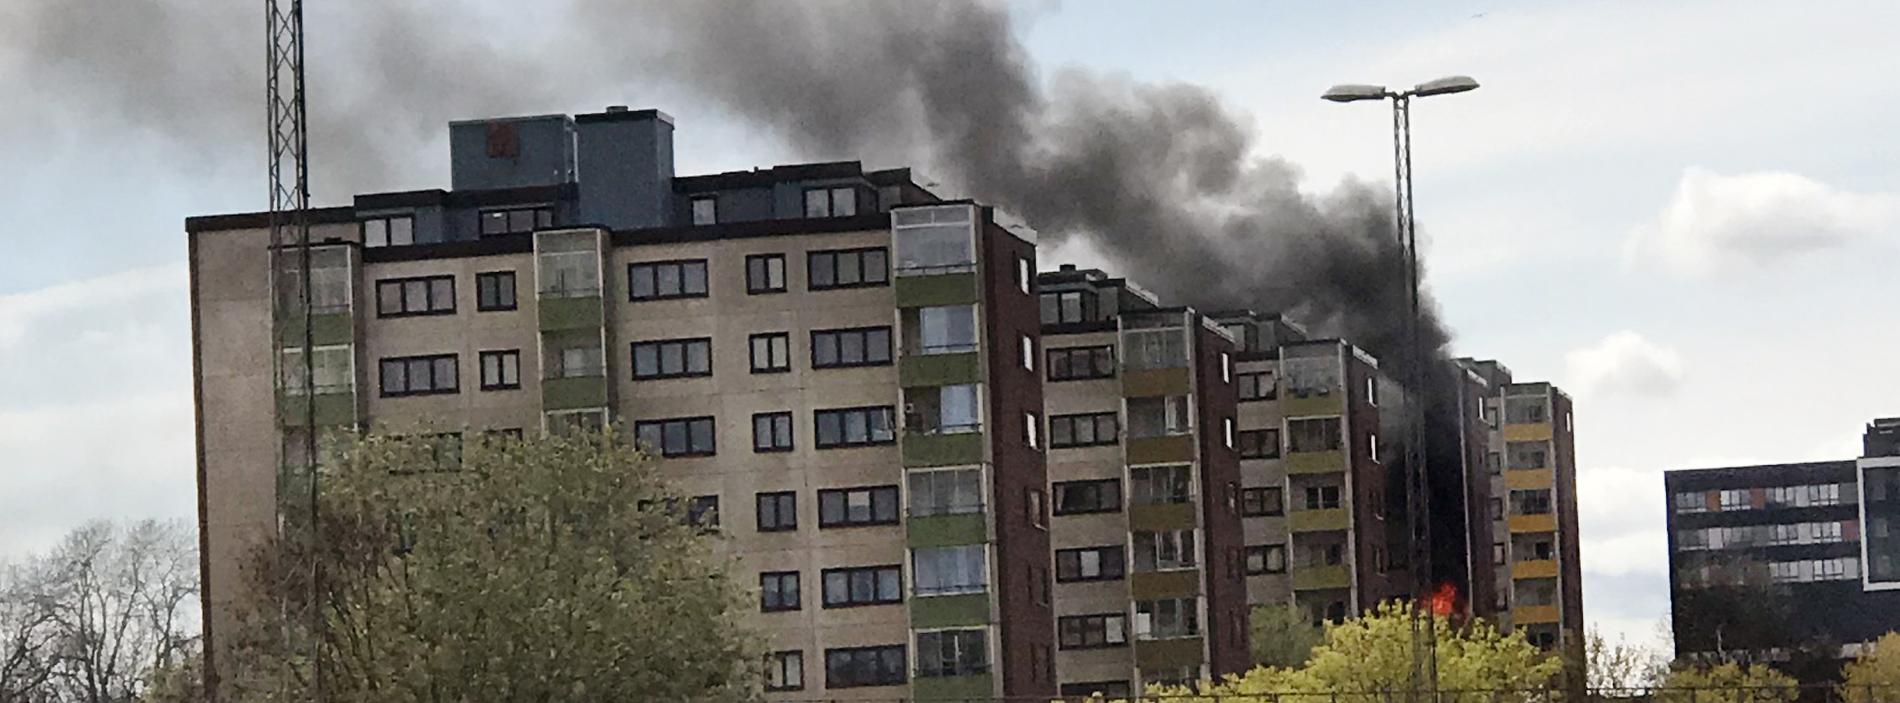 Ett höghus brinner i Botkyrka i Stockholm.